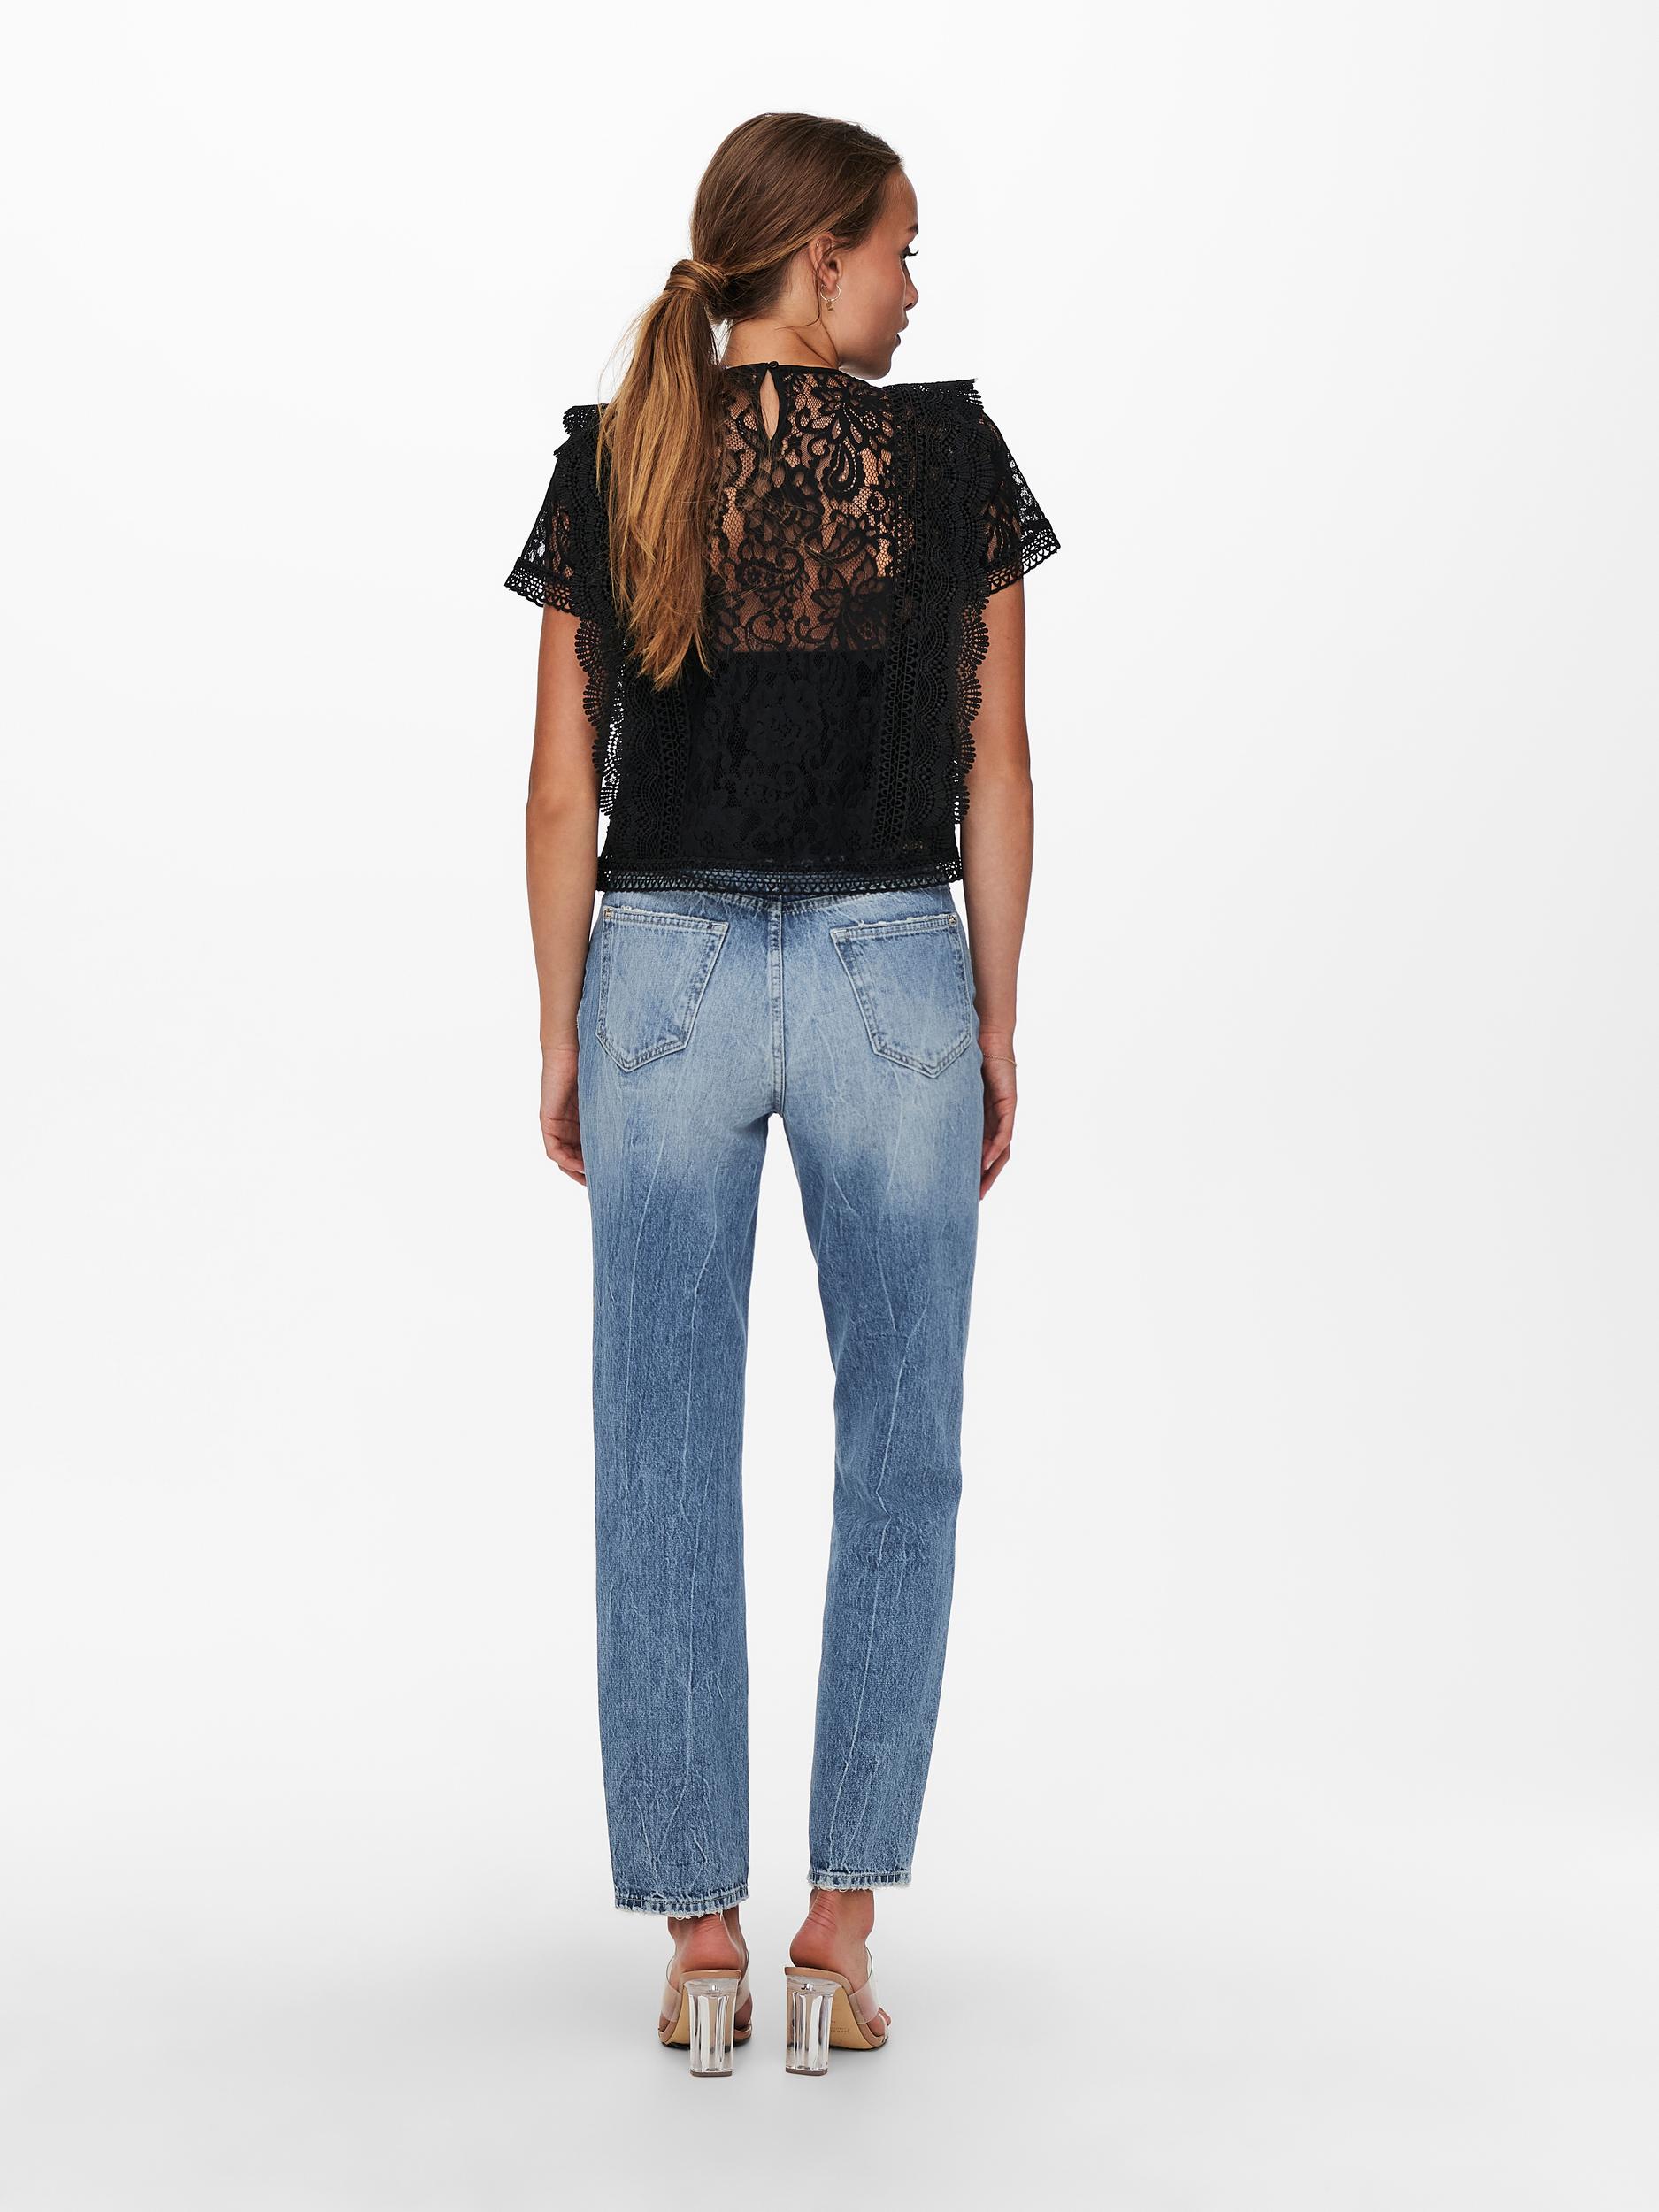 Lona lace overlay blouse, BLACK, large